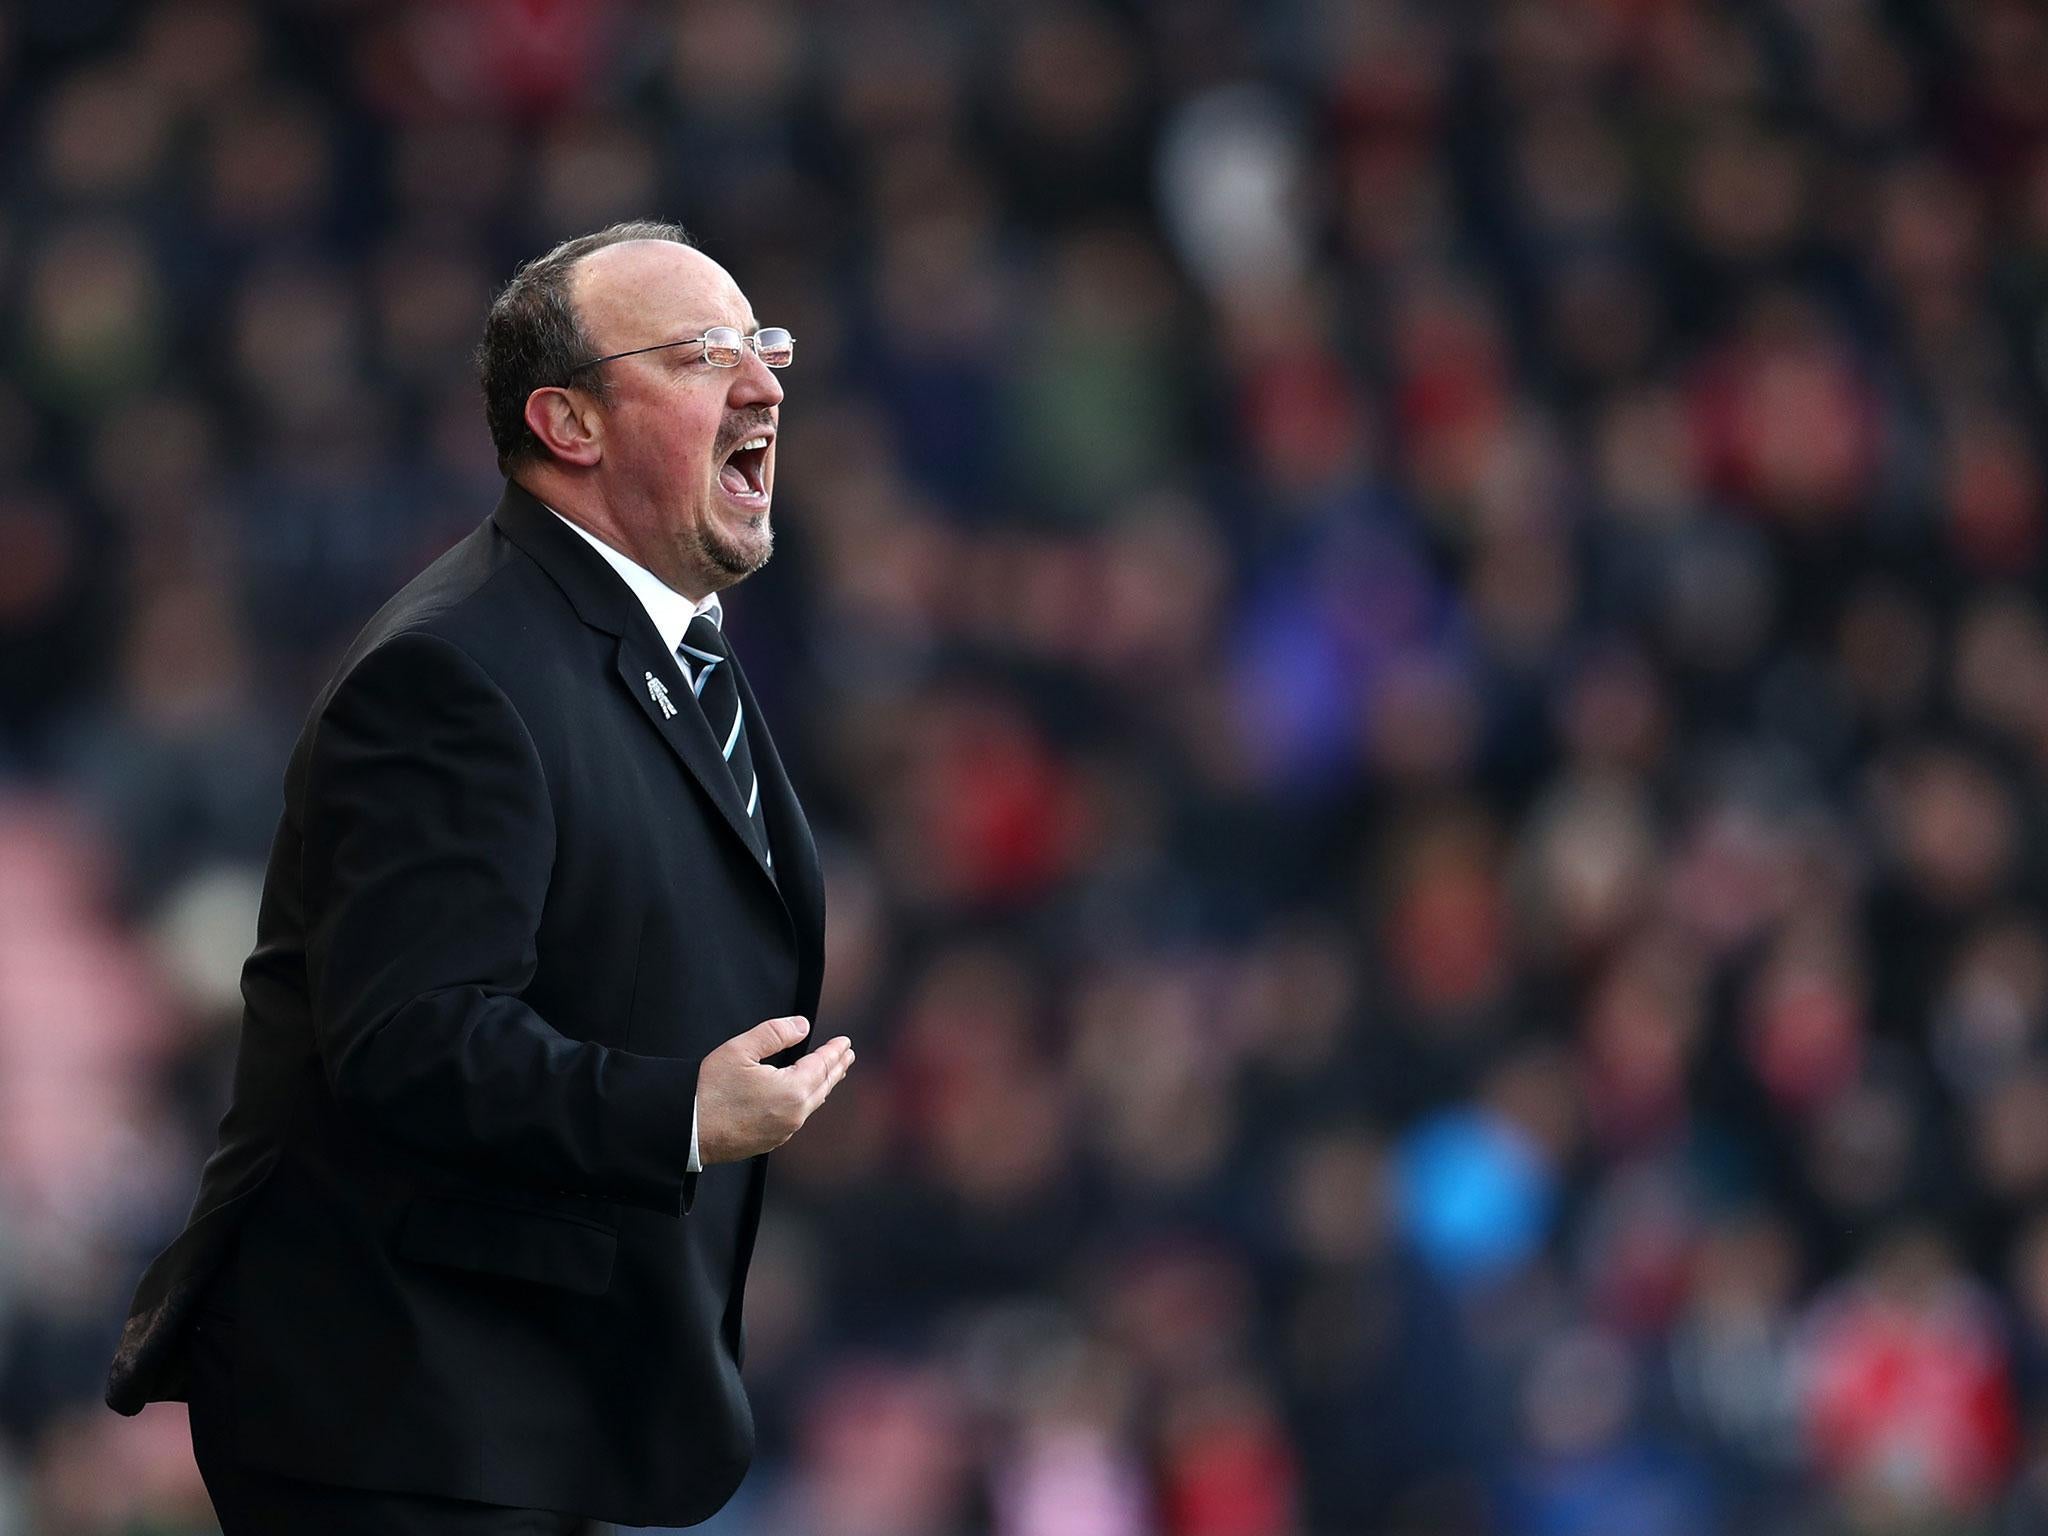 Rafa Benitez is in a relegation battle